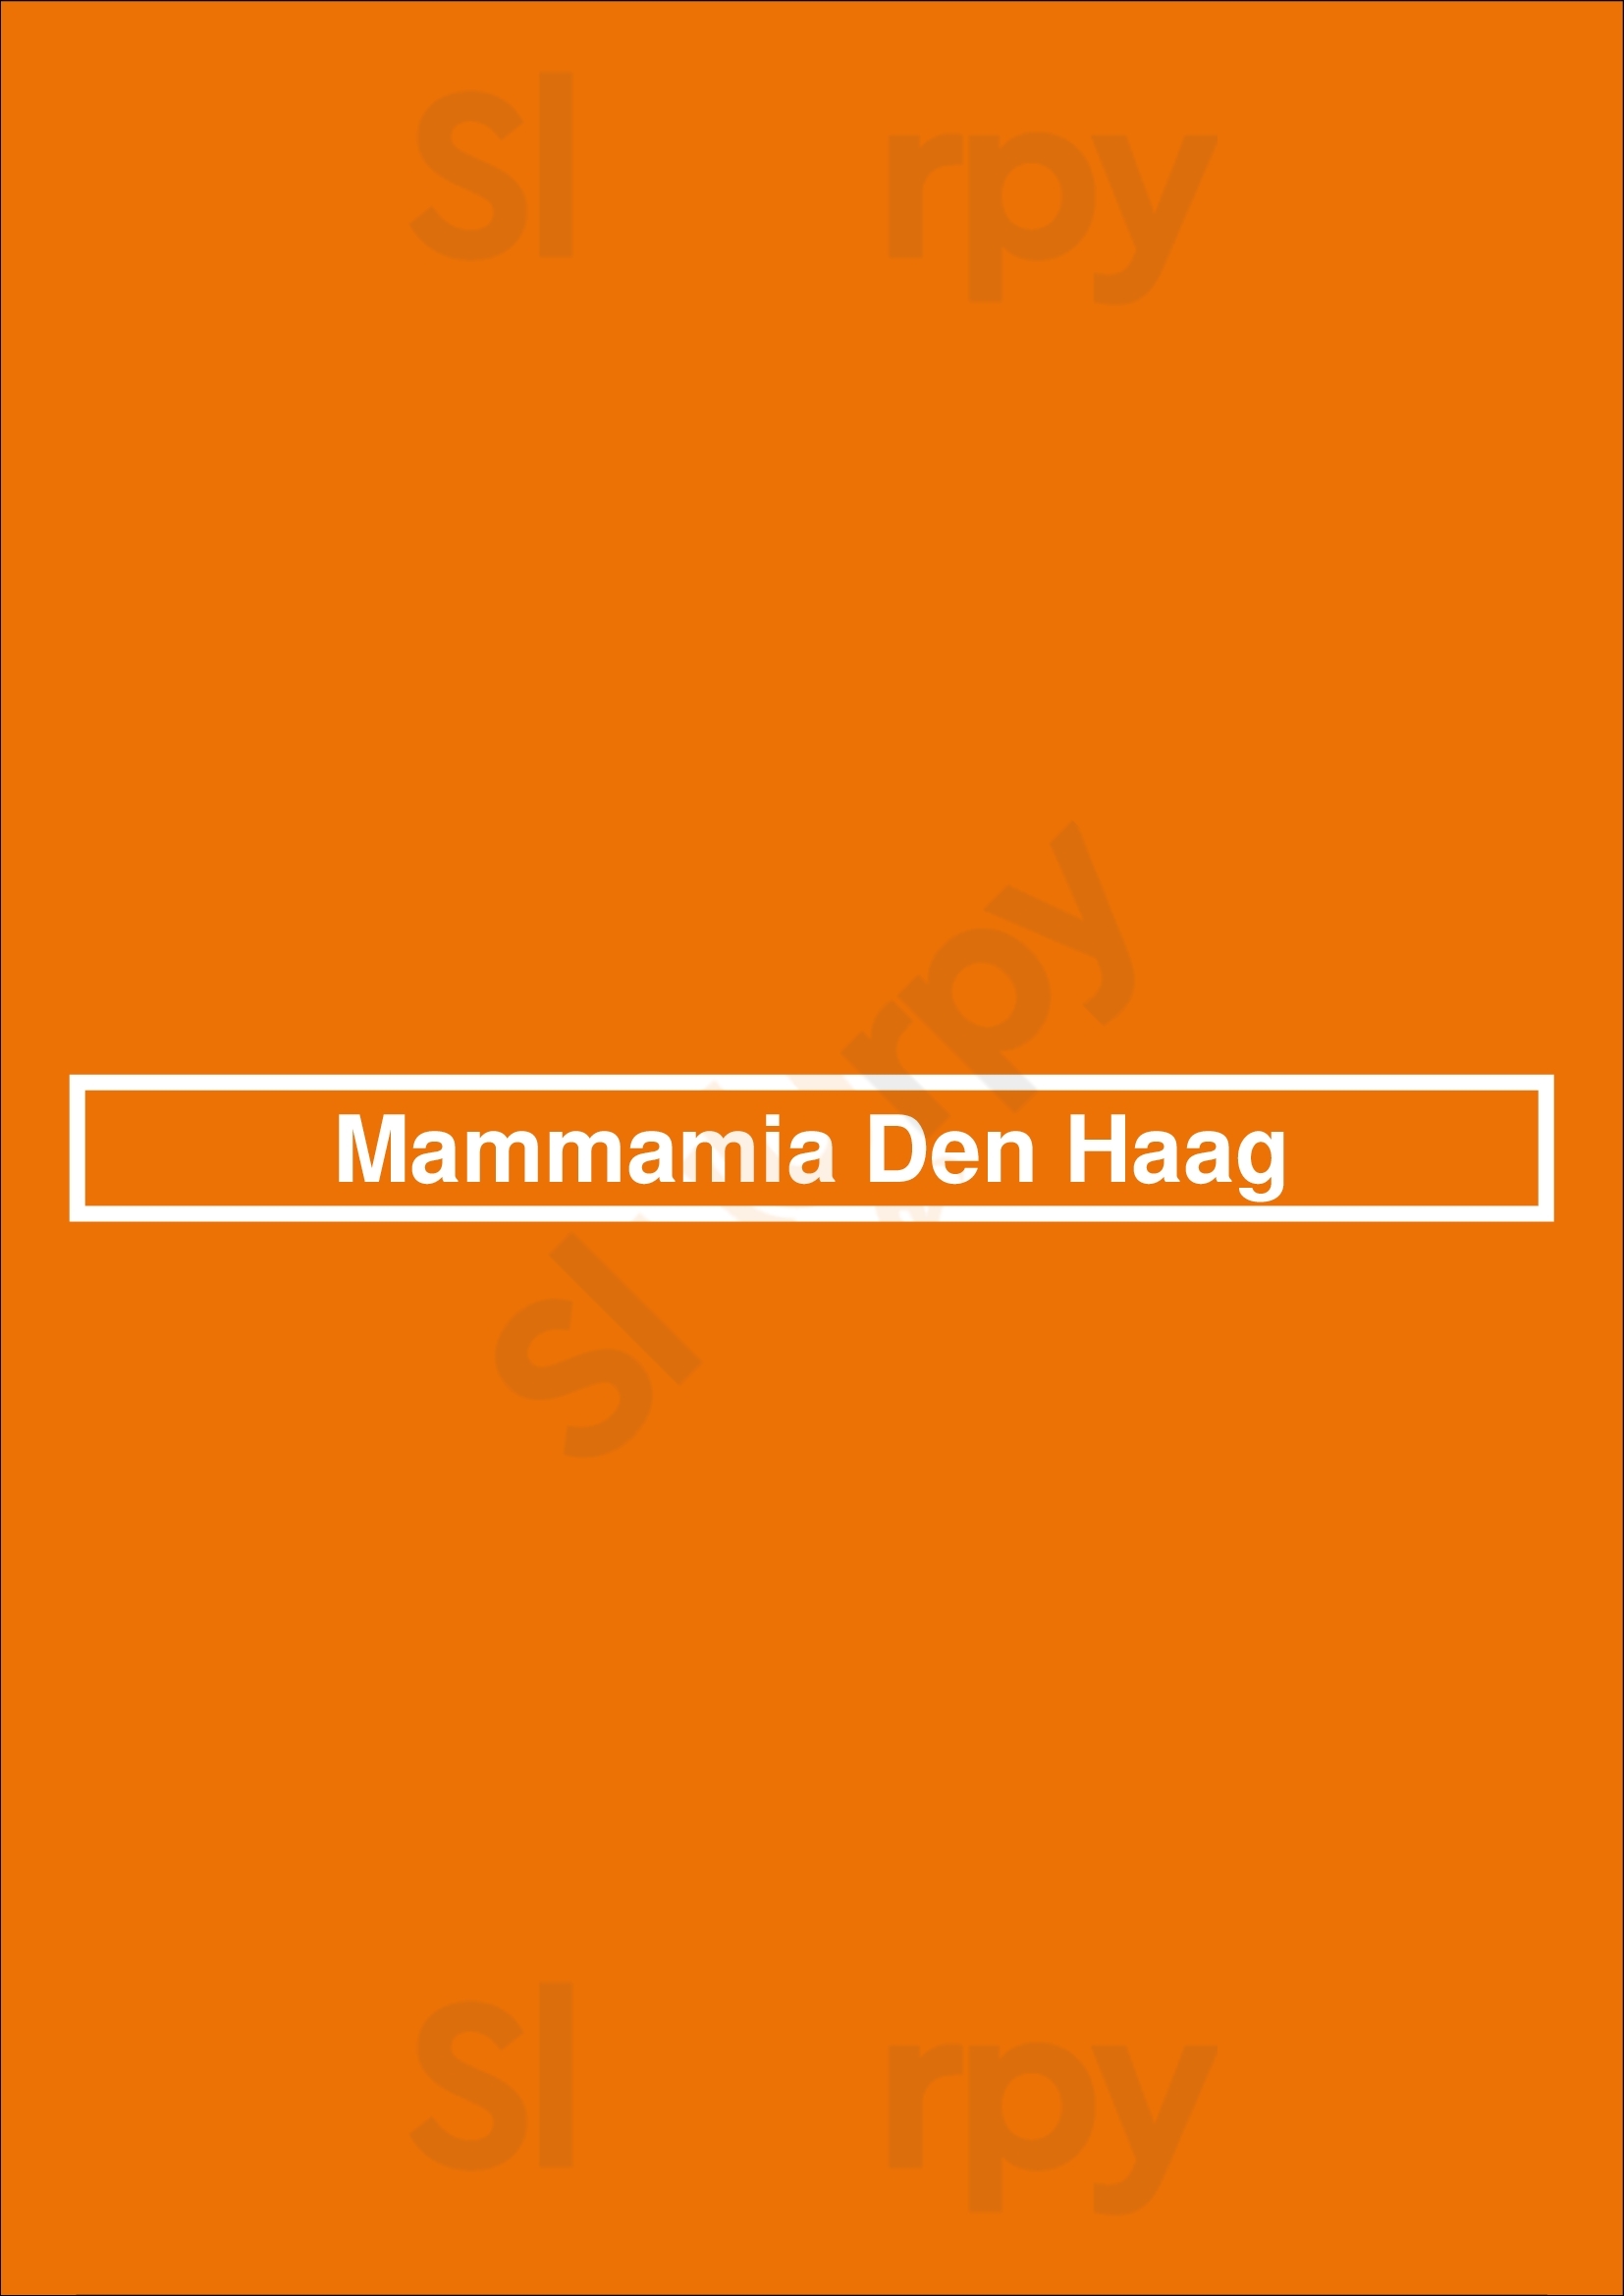 Mammamia Den Haag Den Haag Menu - 1